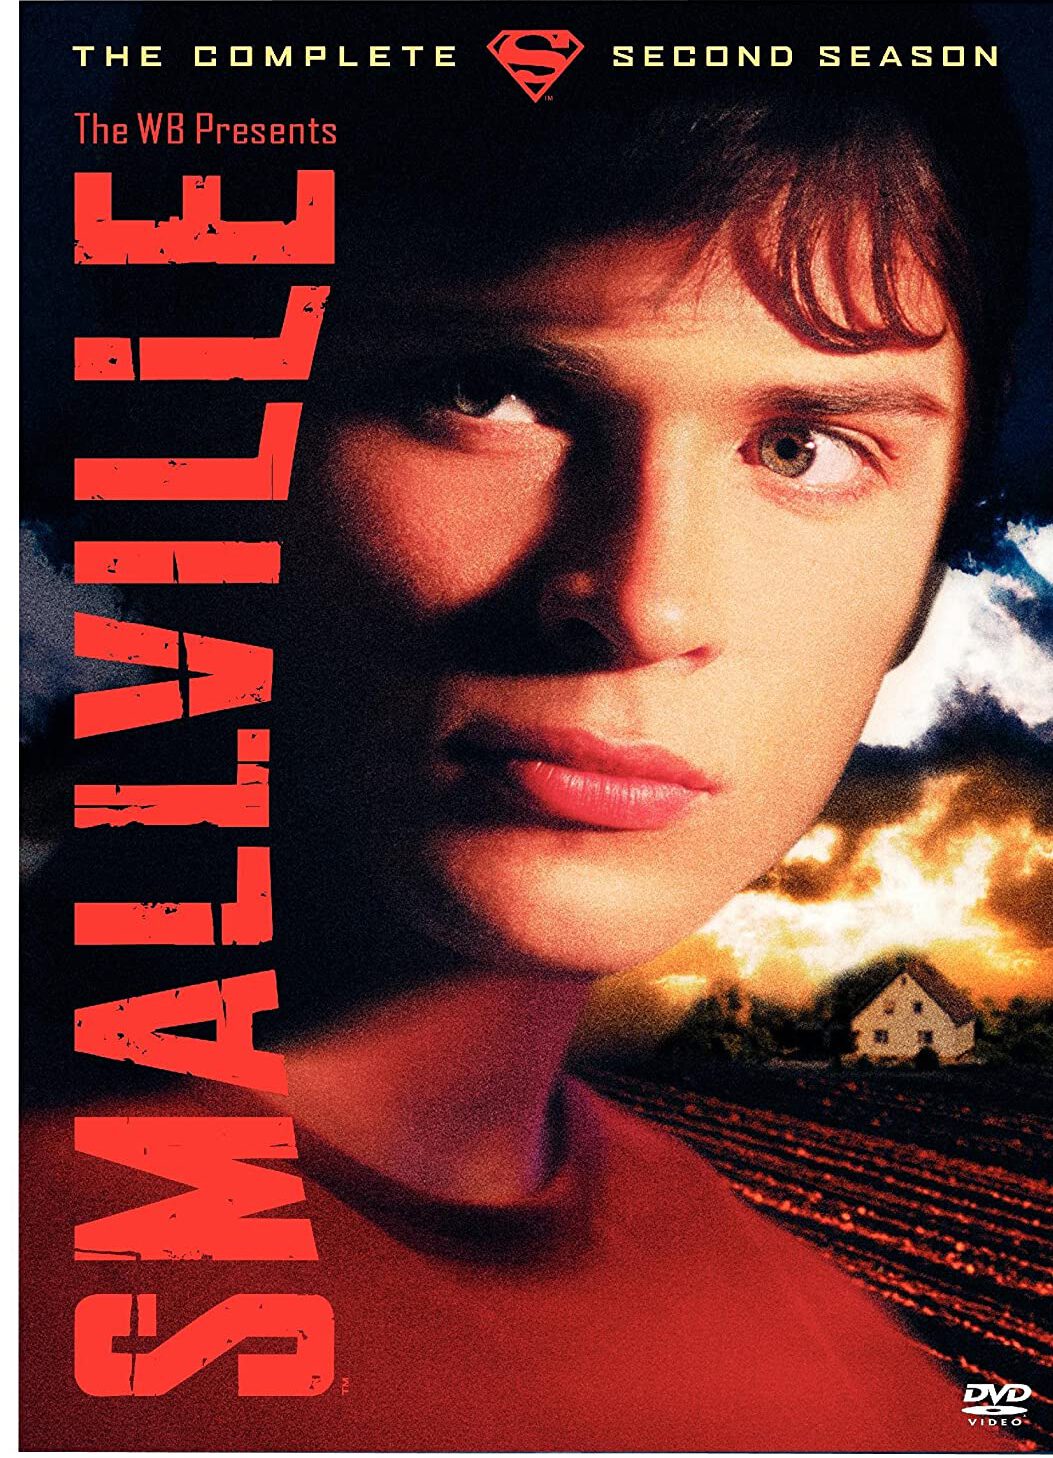 ดูหนังออนไลน์ฟรี Smallville สมอลวิลล์ หนุ่มน้อยซุปเปอร์แมน ปี 2 ตอนที่ 19